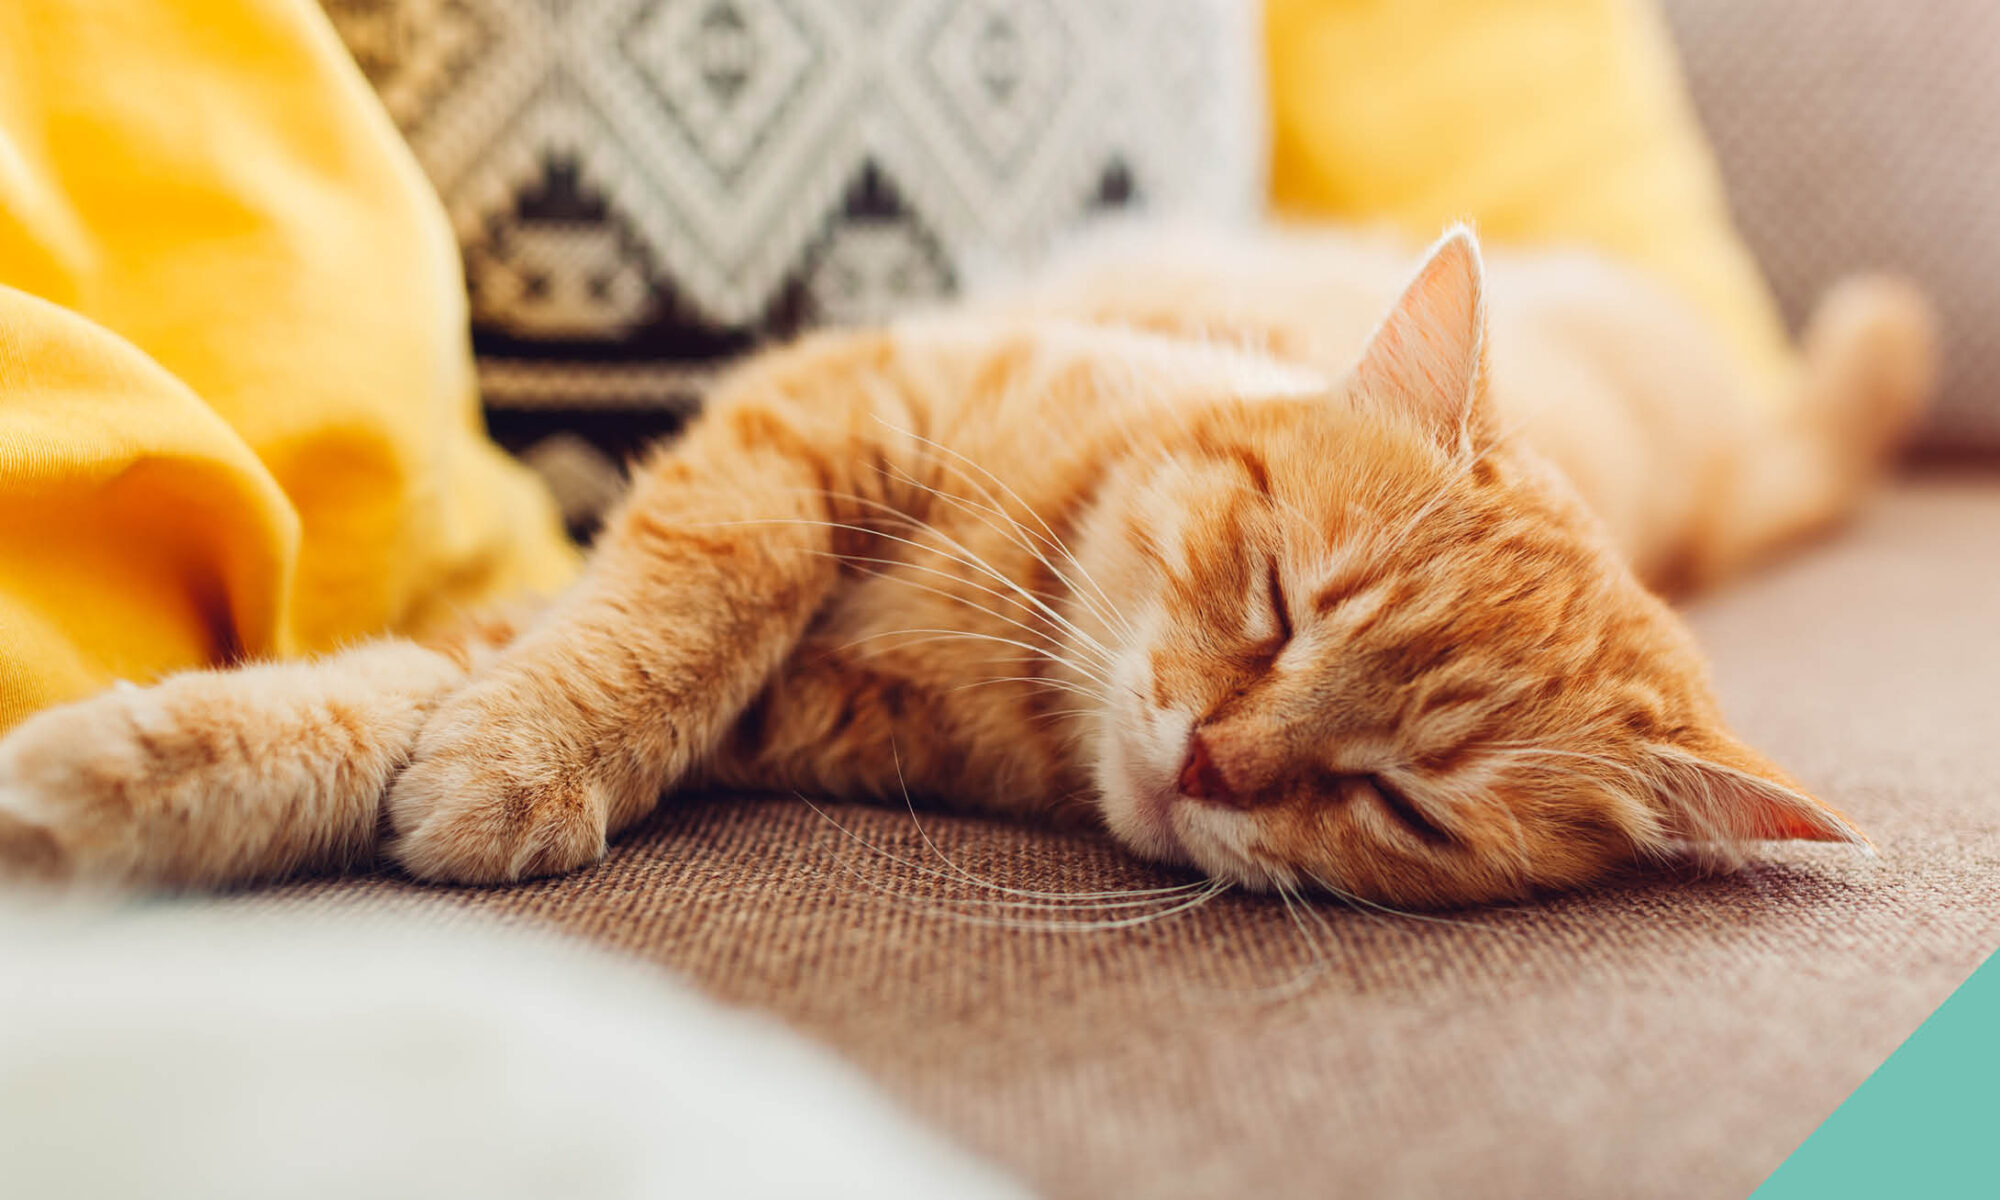 Ginger cat lying down